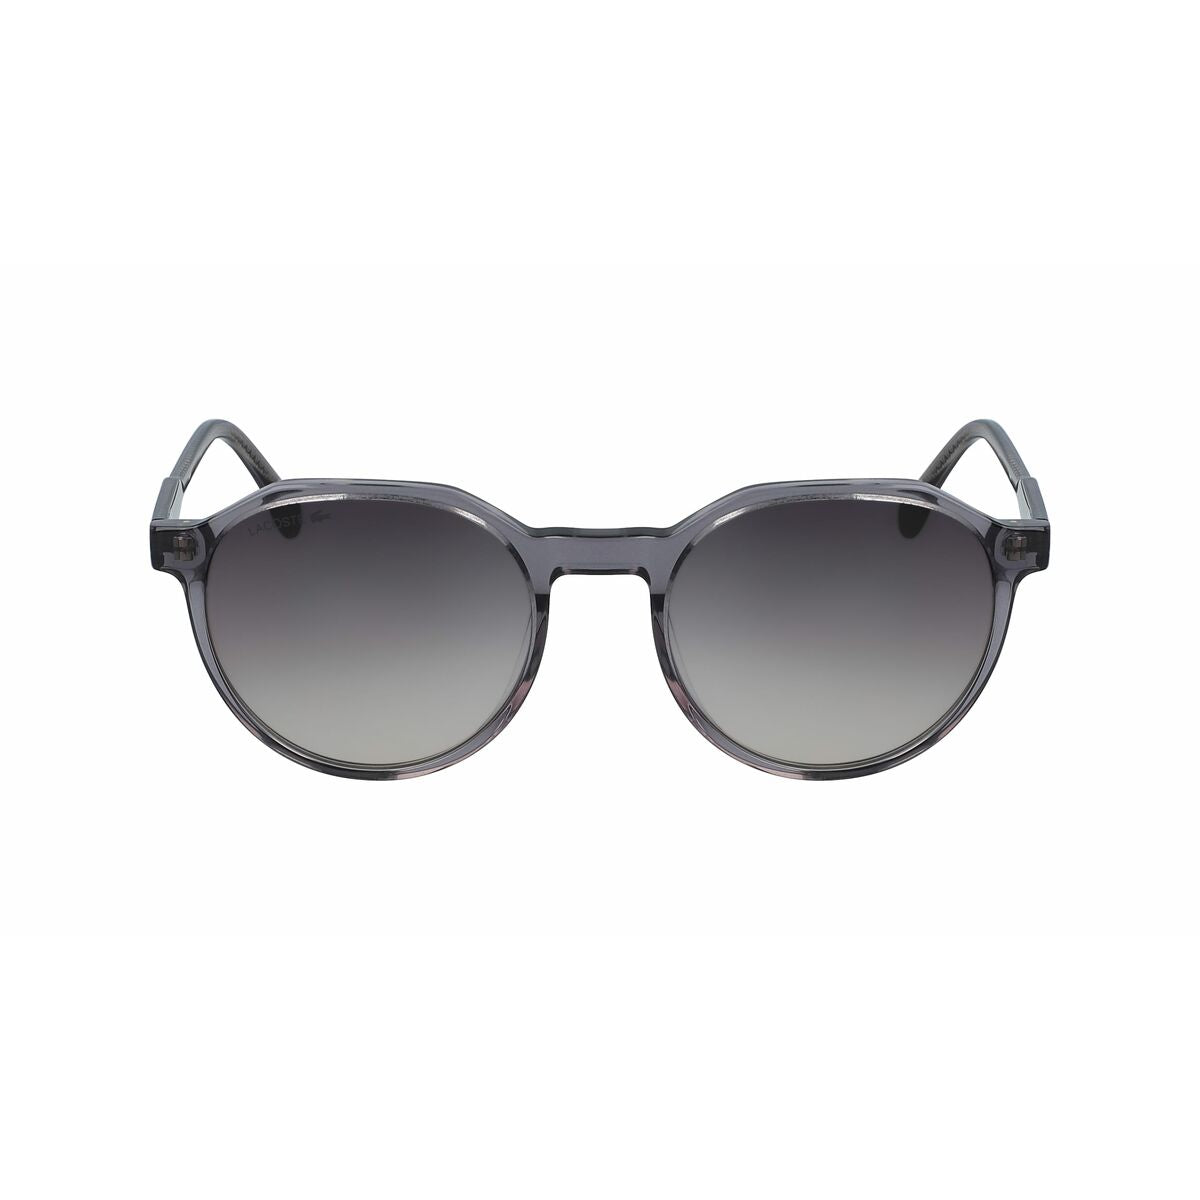 Ladies' Sunglasses Lacoste L909S-57 Ø 52 mm